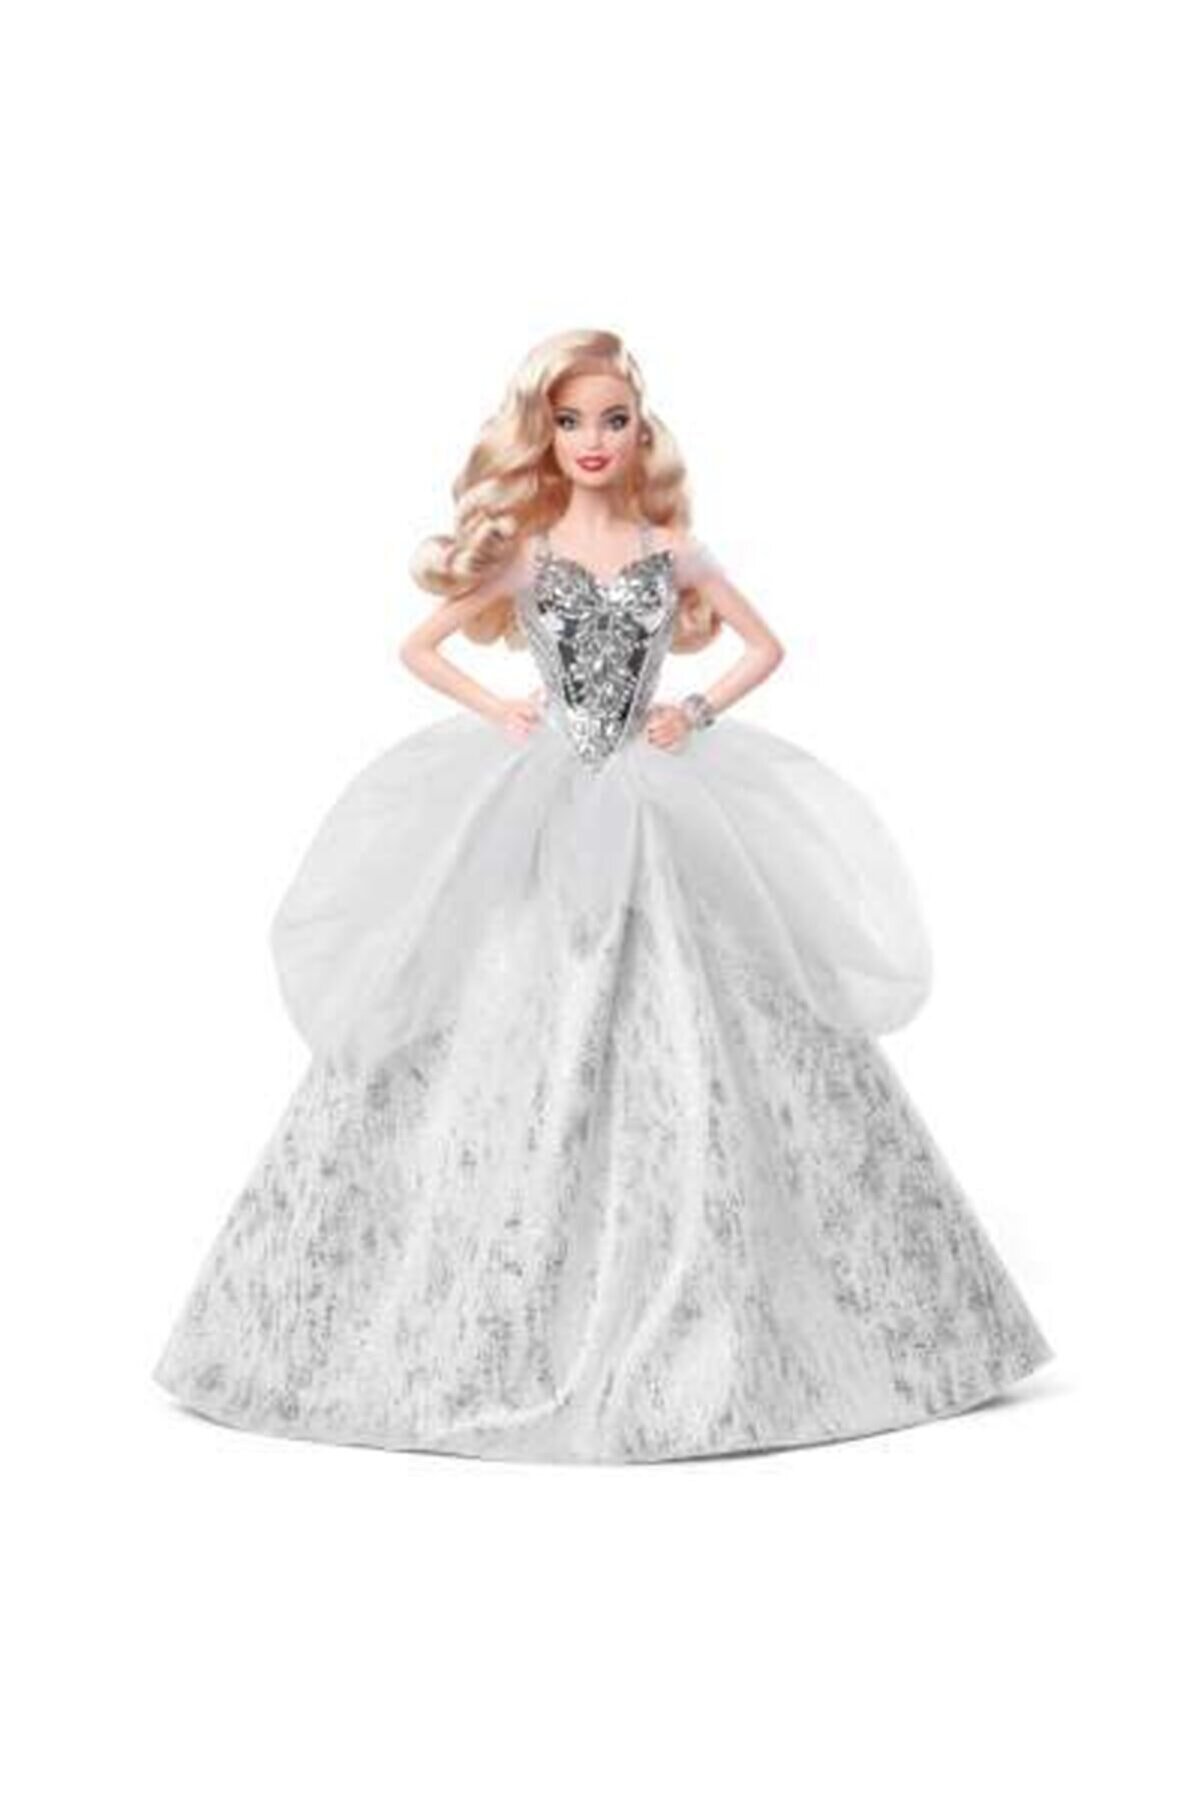 Barbie 2021 Mutlu Yıllar Bebeği Dalgalı Sarı Saçlı, 30 Cm.gümüş Rengi Elbiseli Gxl18